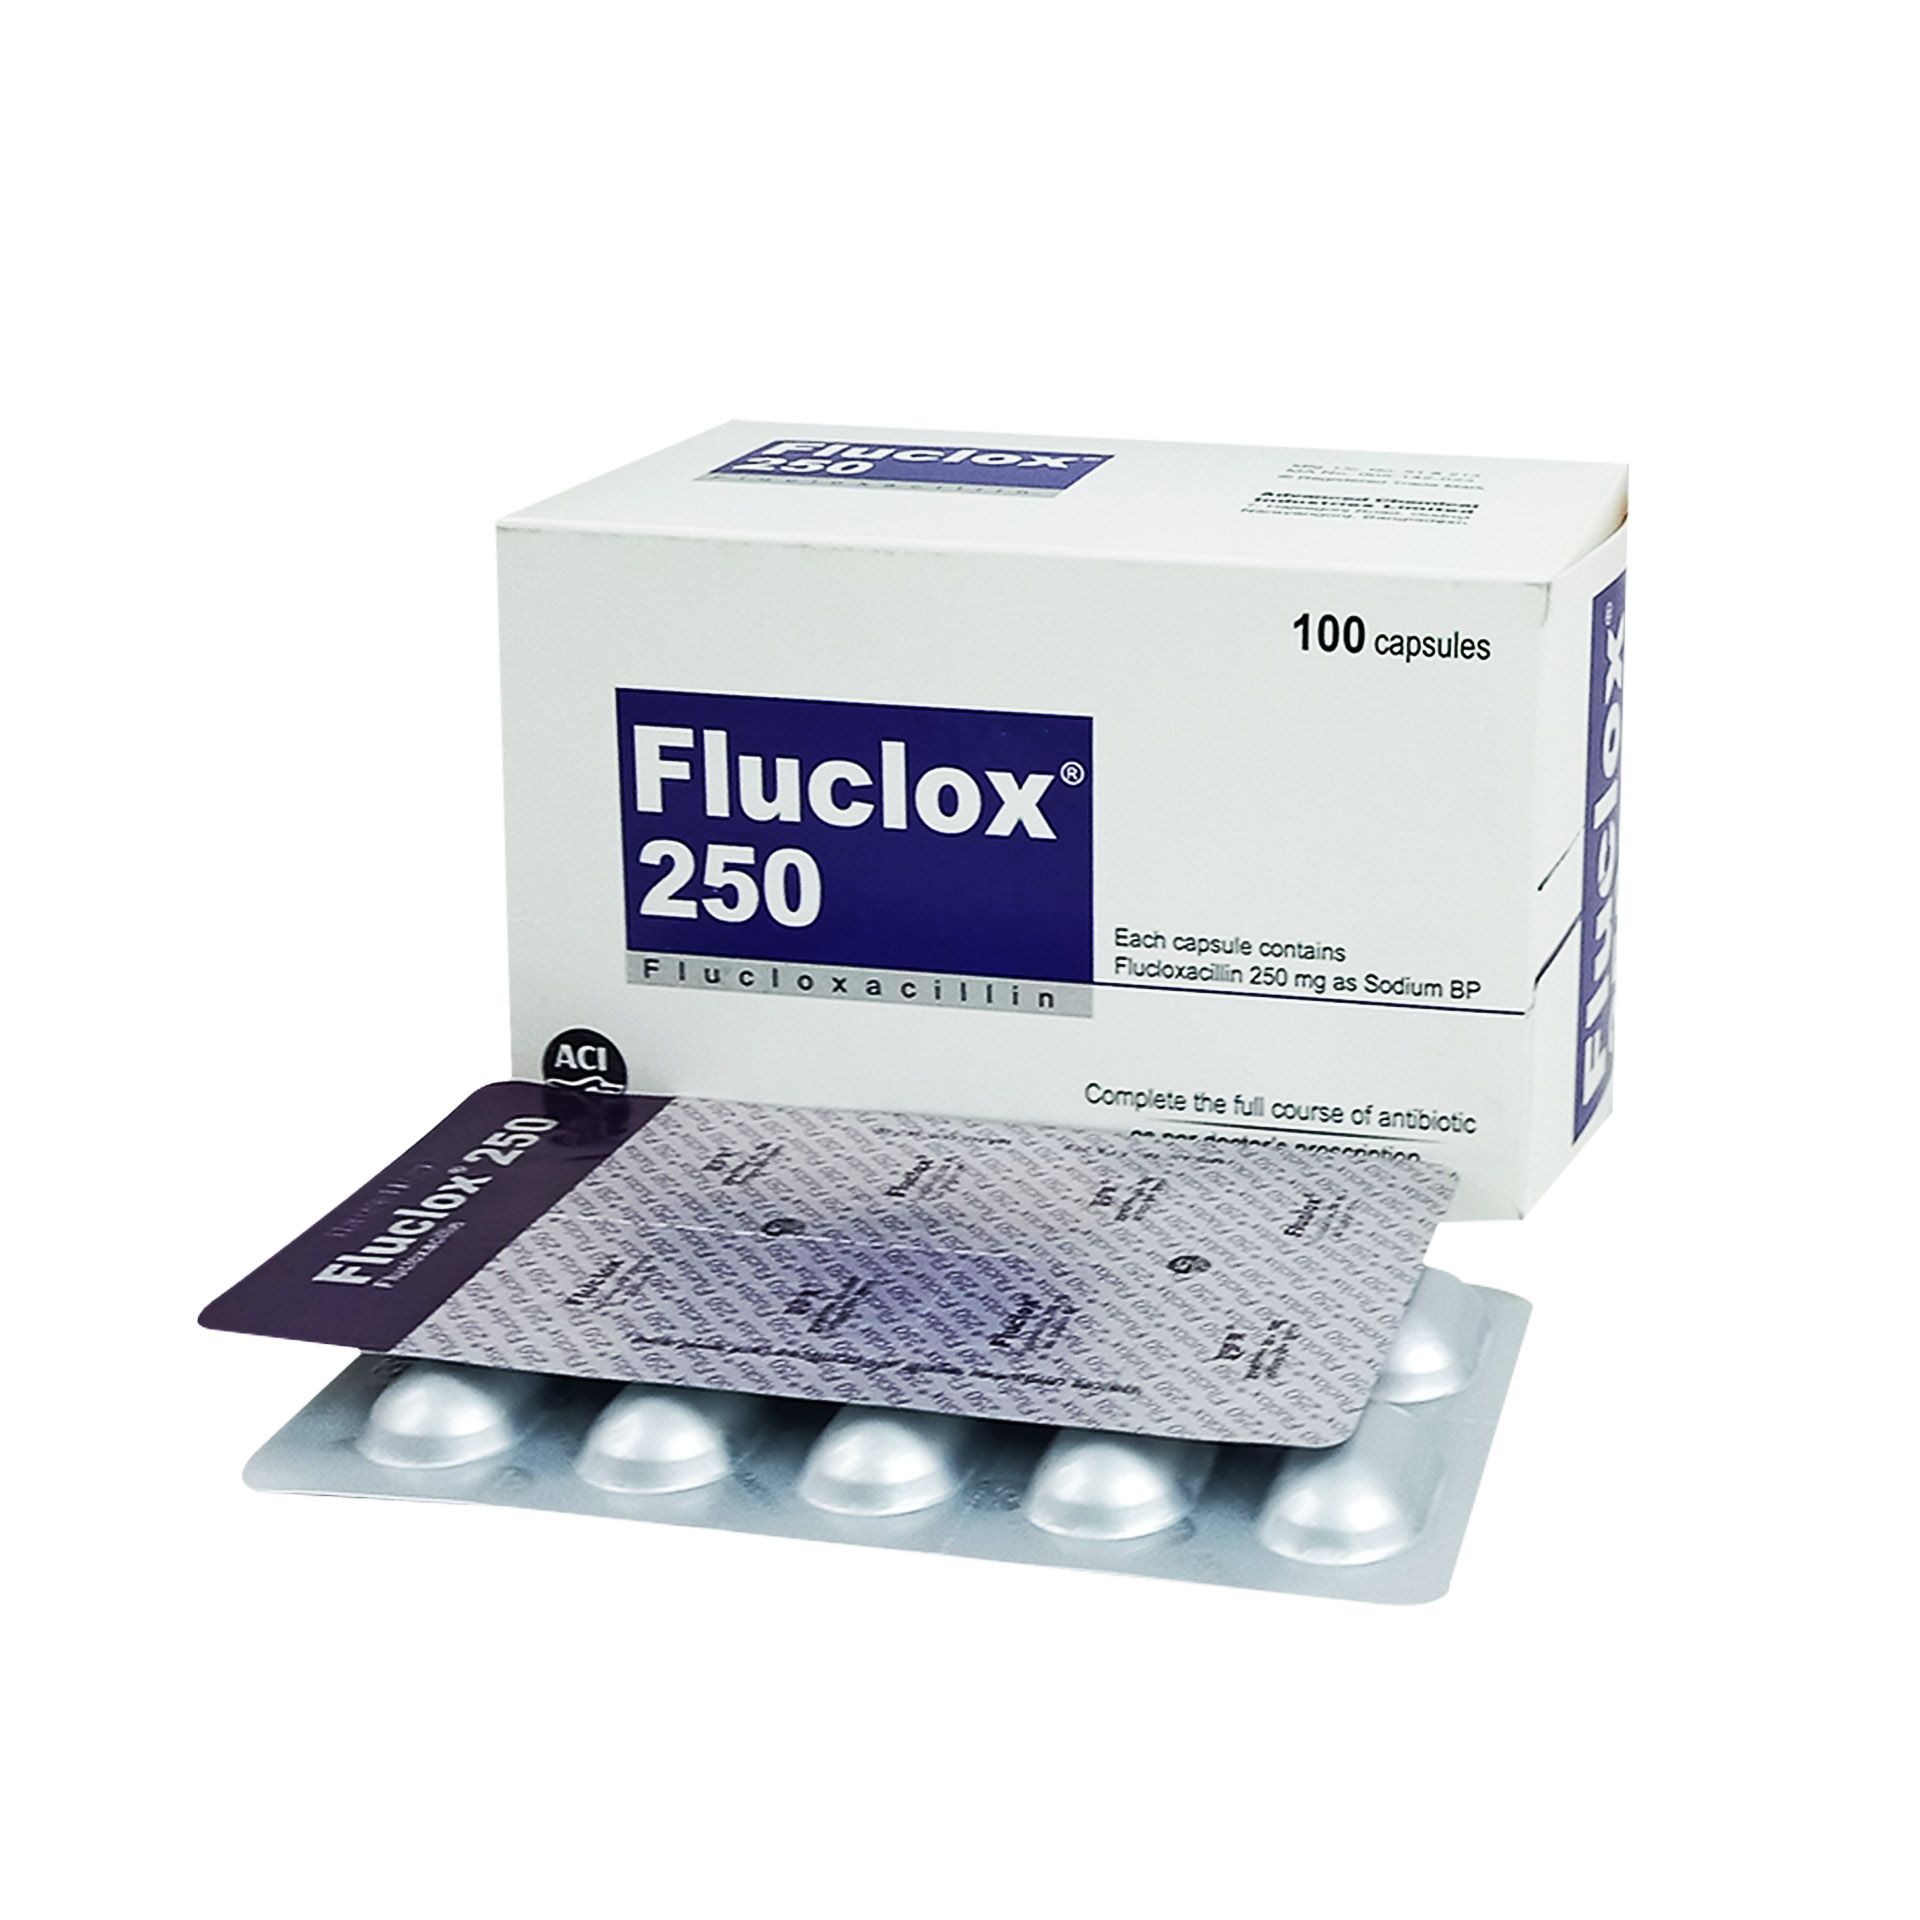 Fluclox 250